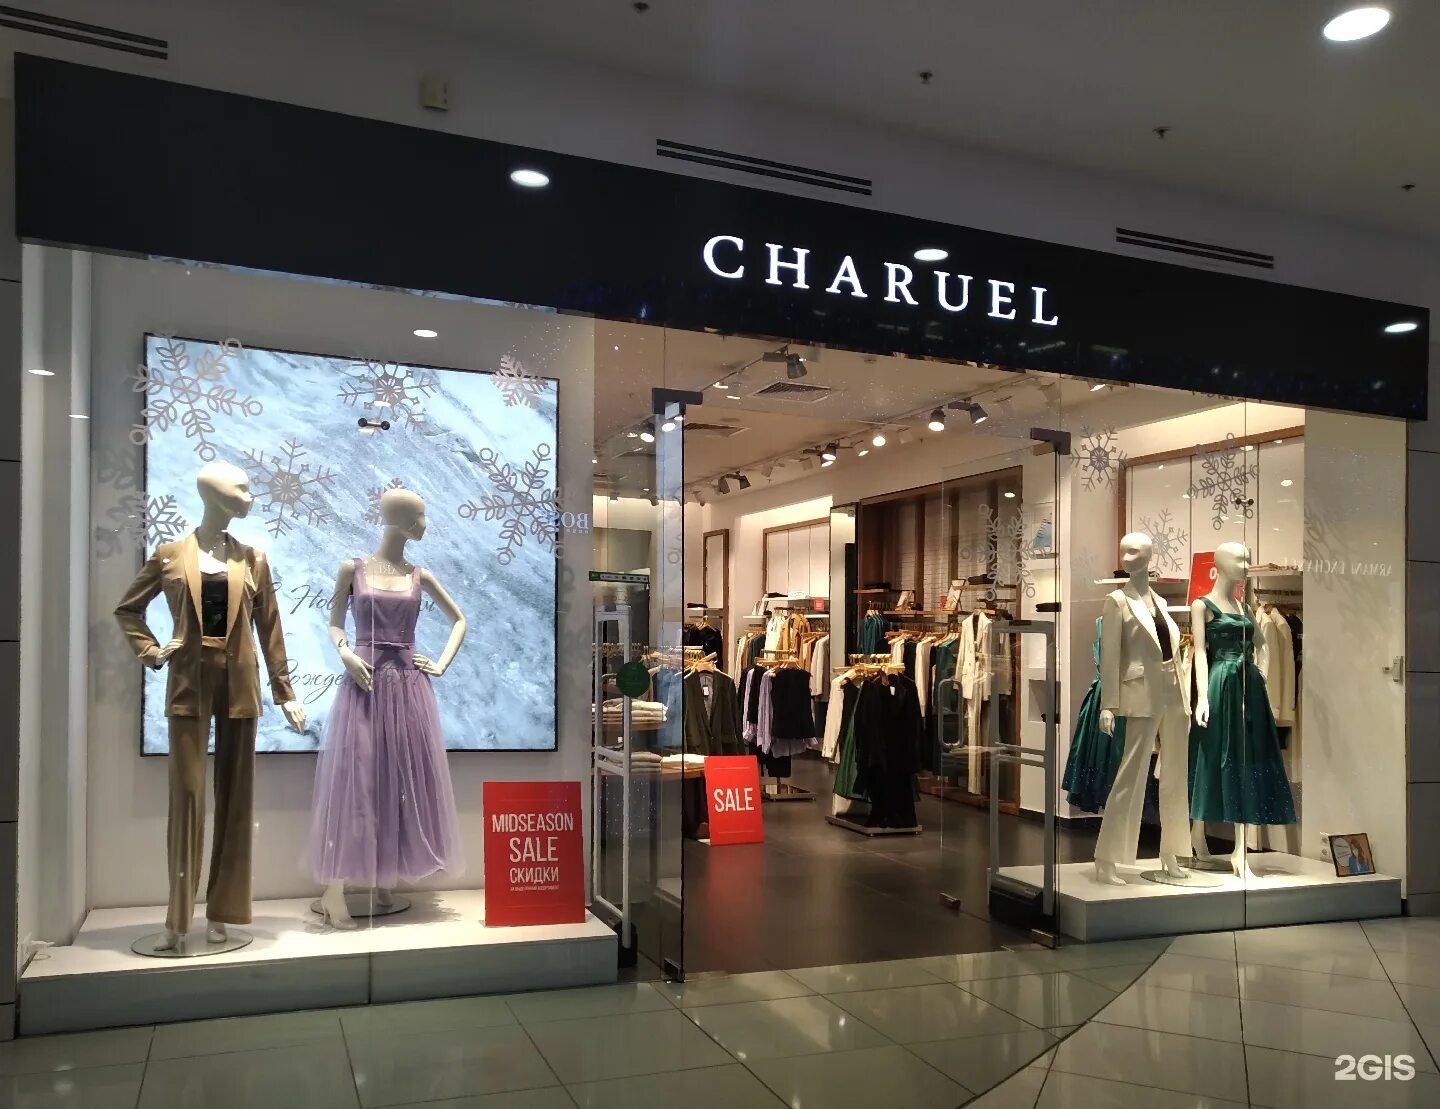 Чаруэль одежда магазины. Charuel одежда. Charuel Атриум. Charuel магазины в Москве. Charuel Колумбус.